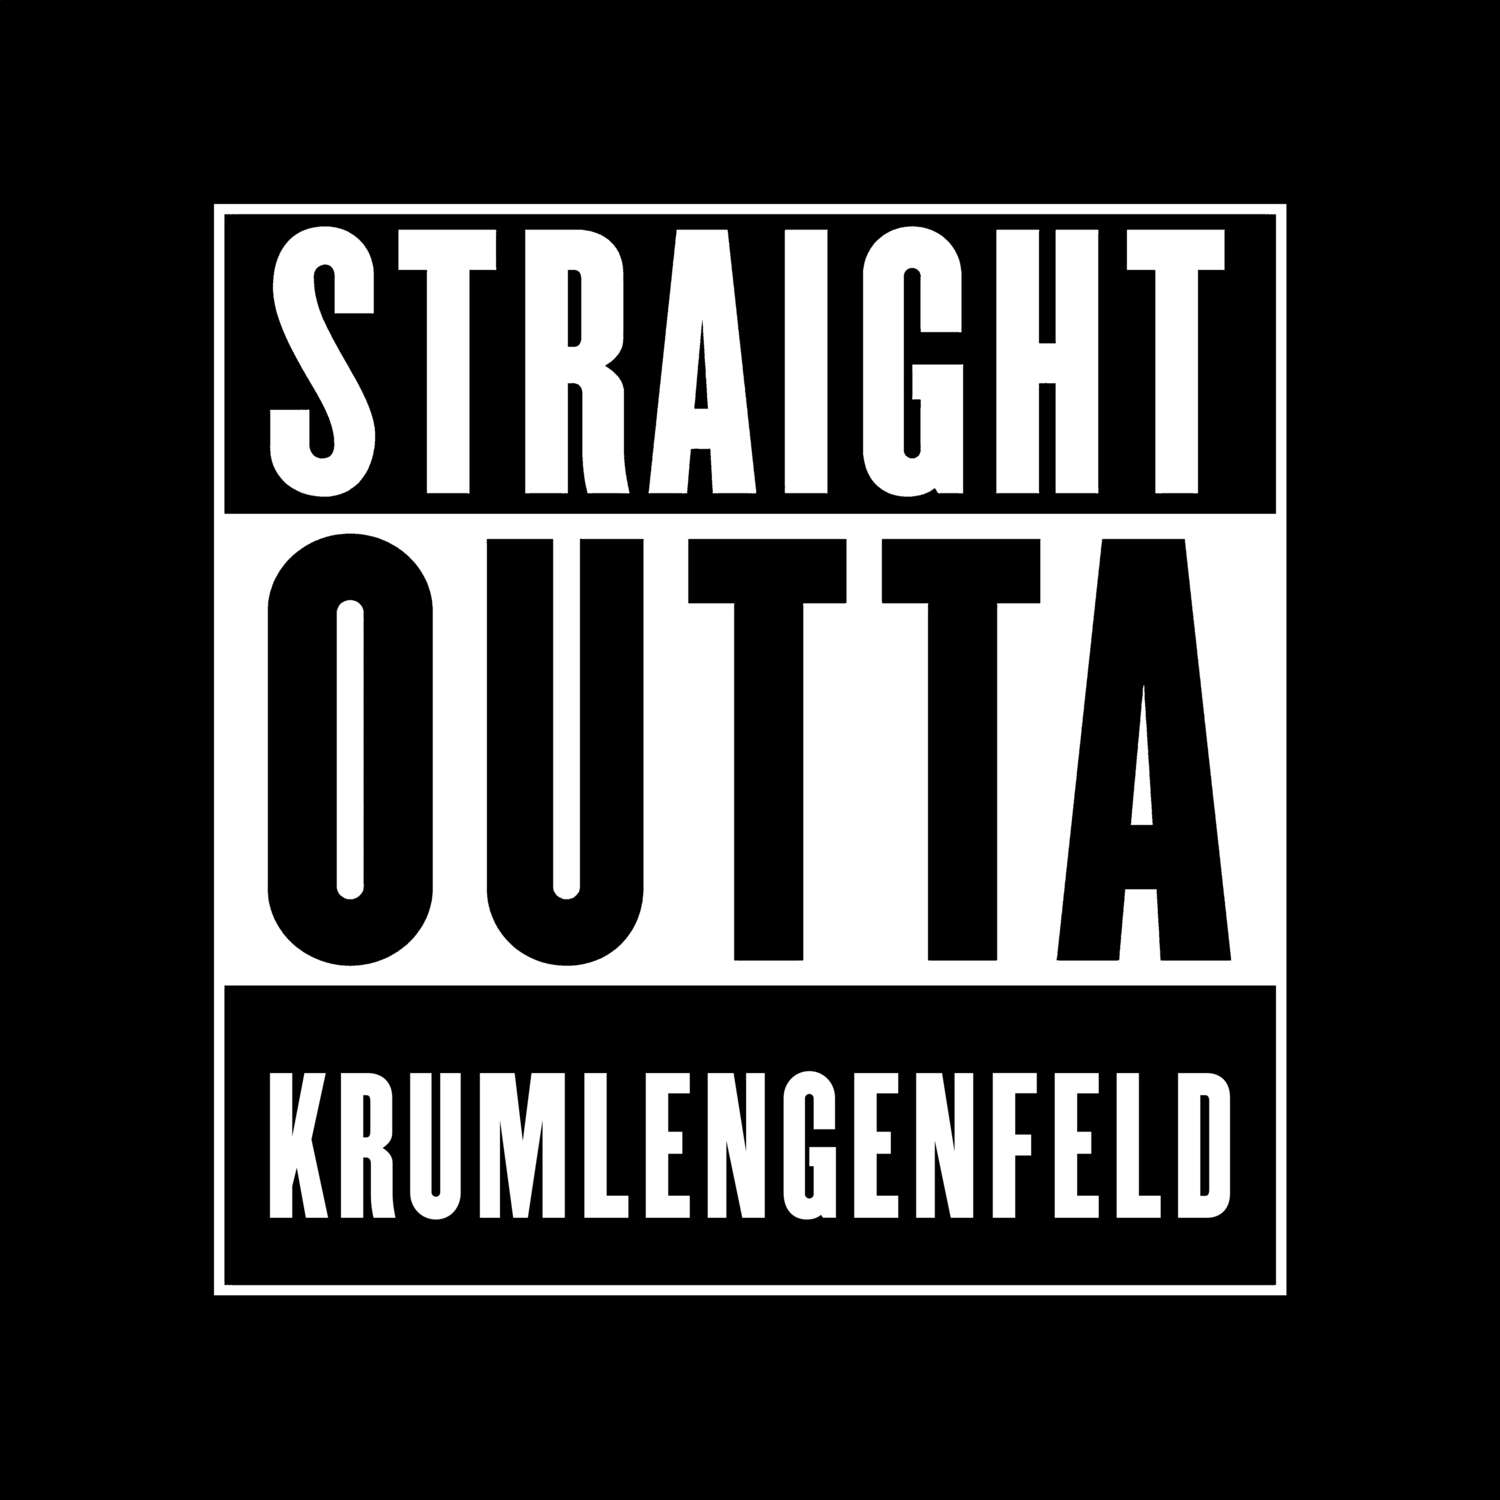 Krumlengenfeld T-Shirt »Straight Outta«